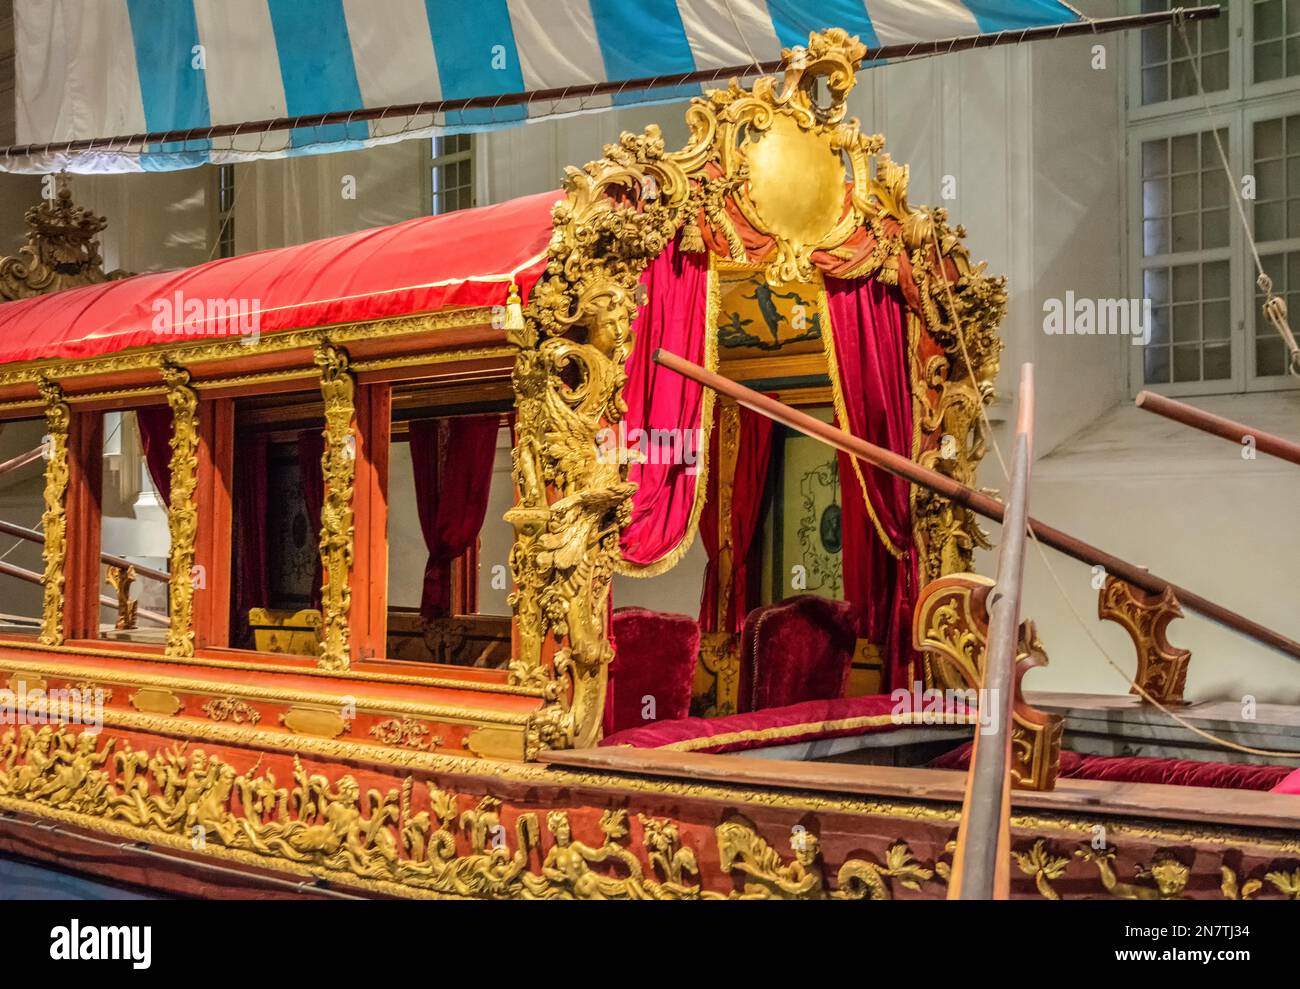 Königliche Stallungen - Ausstellung 'Bucentaur und die königlichen Kutschen' - Venaria reale, Turin, Piemont, Norditalien - Europa Stockfoto